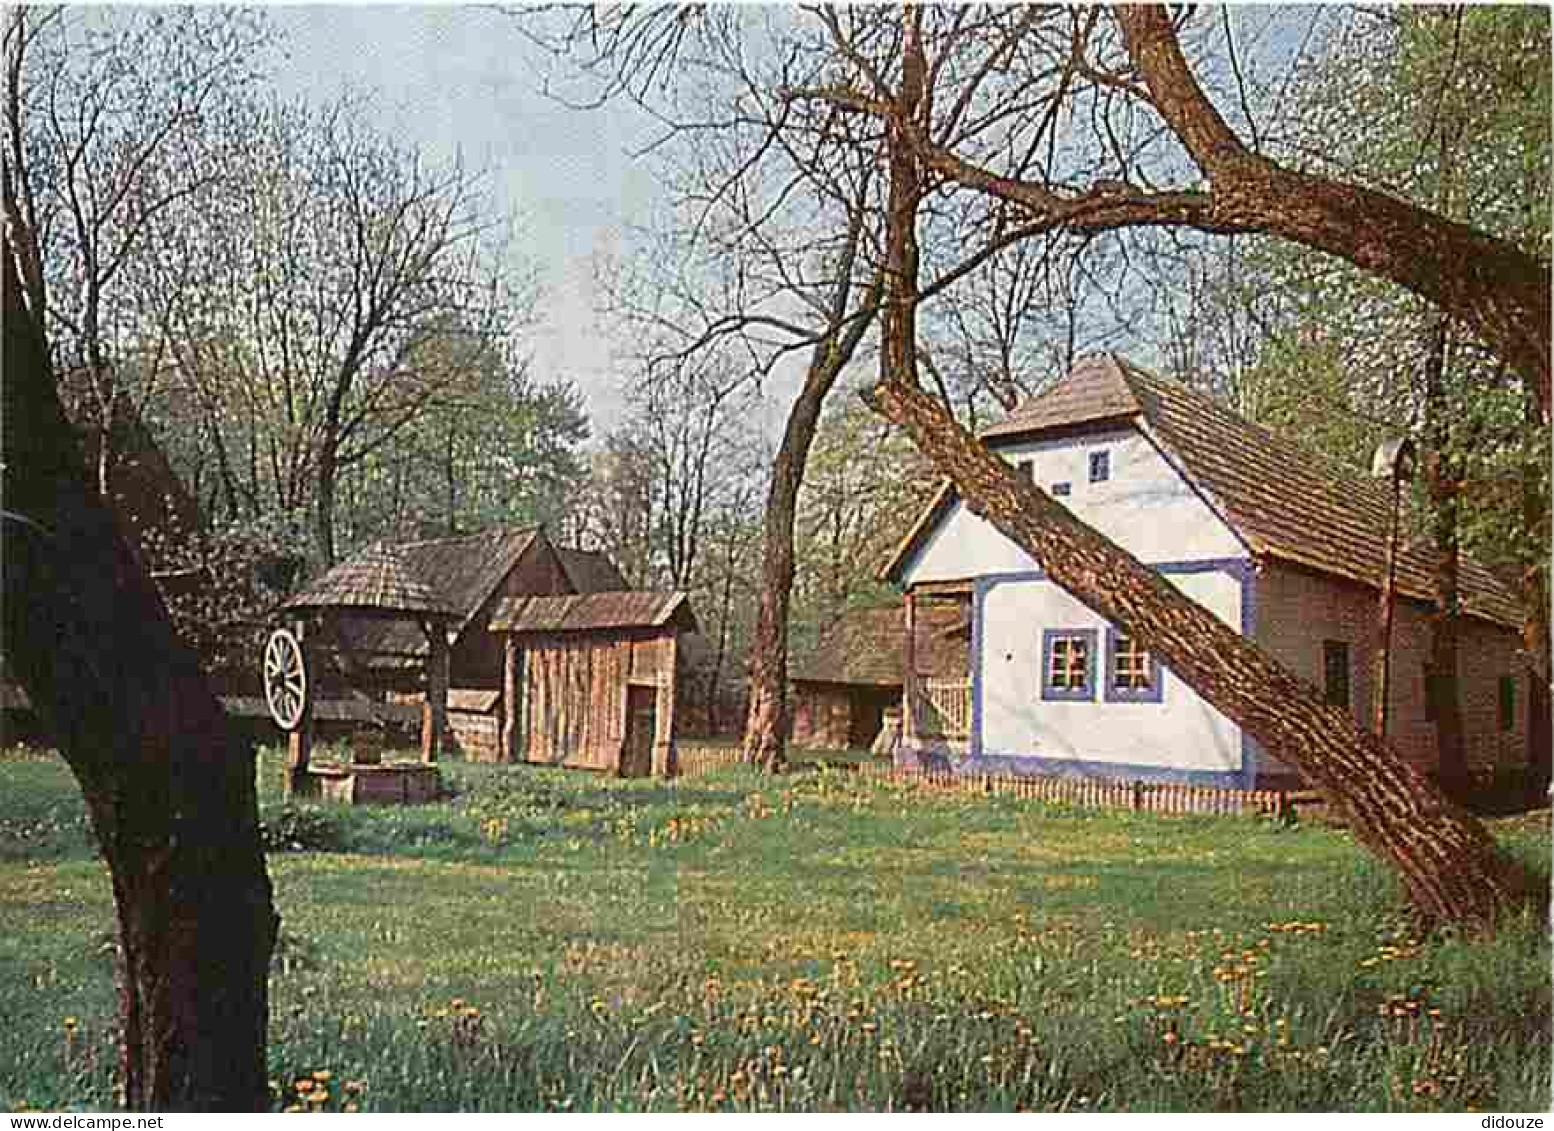 Roumanie - Le Musée Du Village Et D'Art Populaire - Cimpani De Sus - XIXe S - CPM - Voir Scans Recto-Verso - Romania